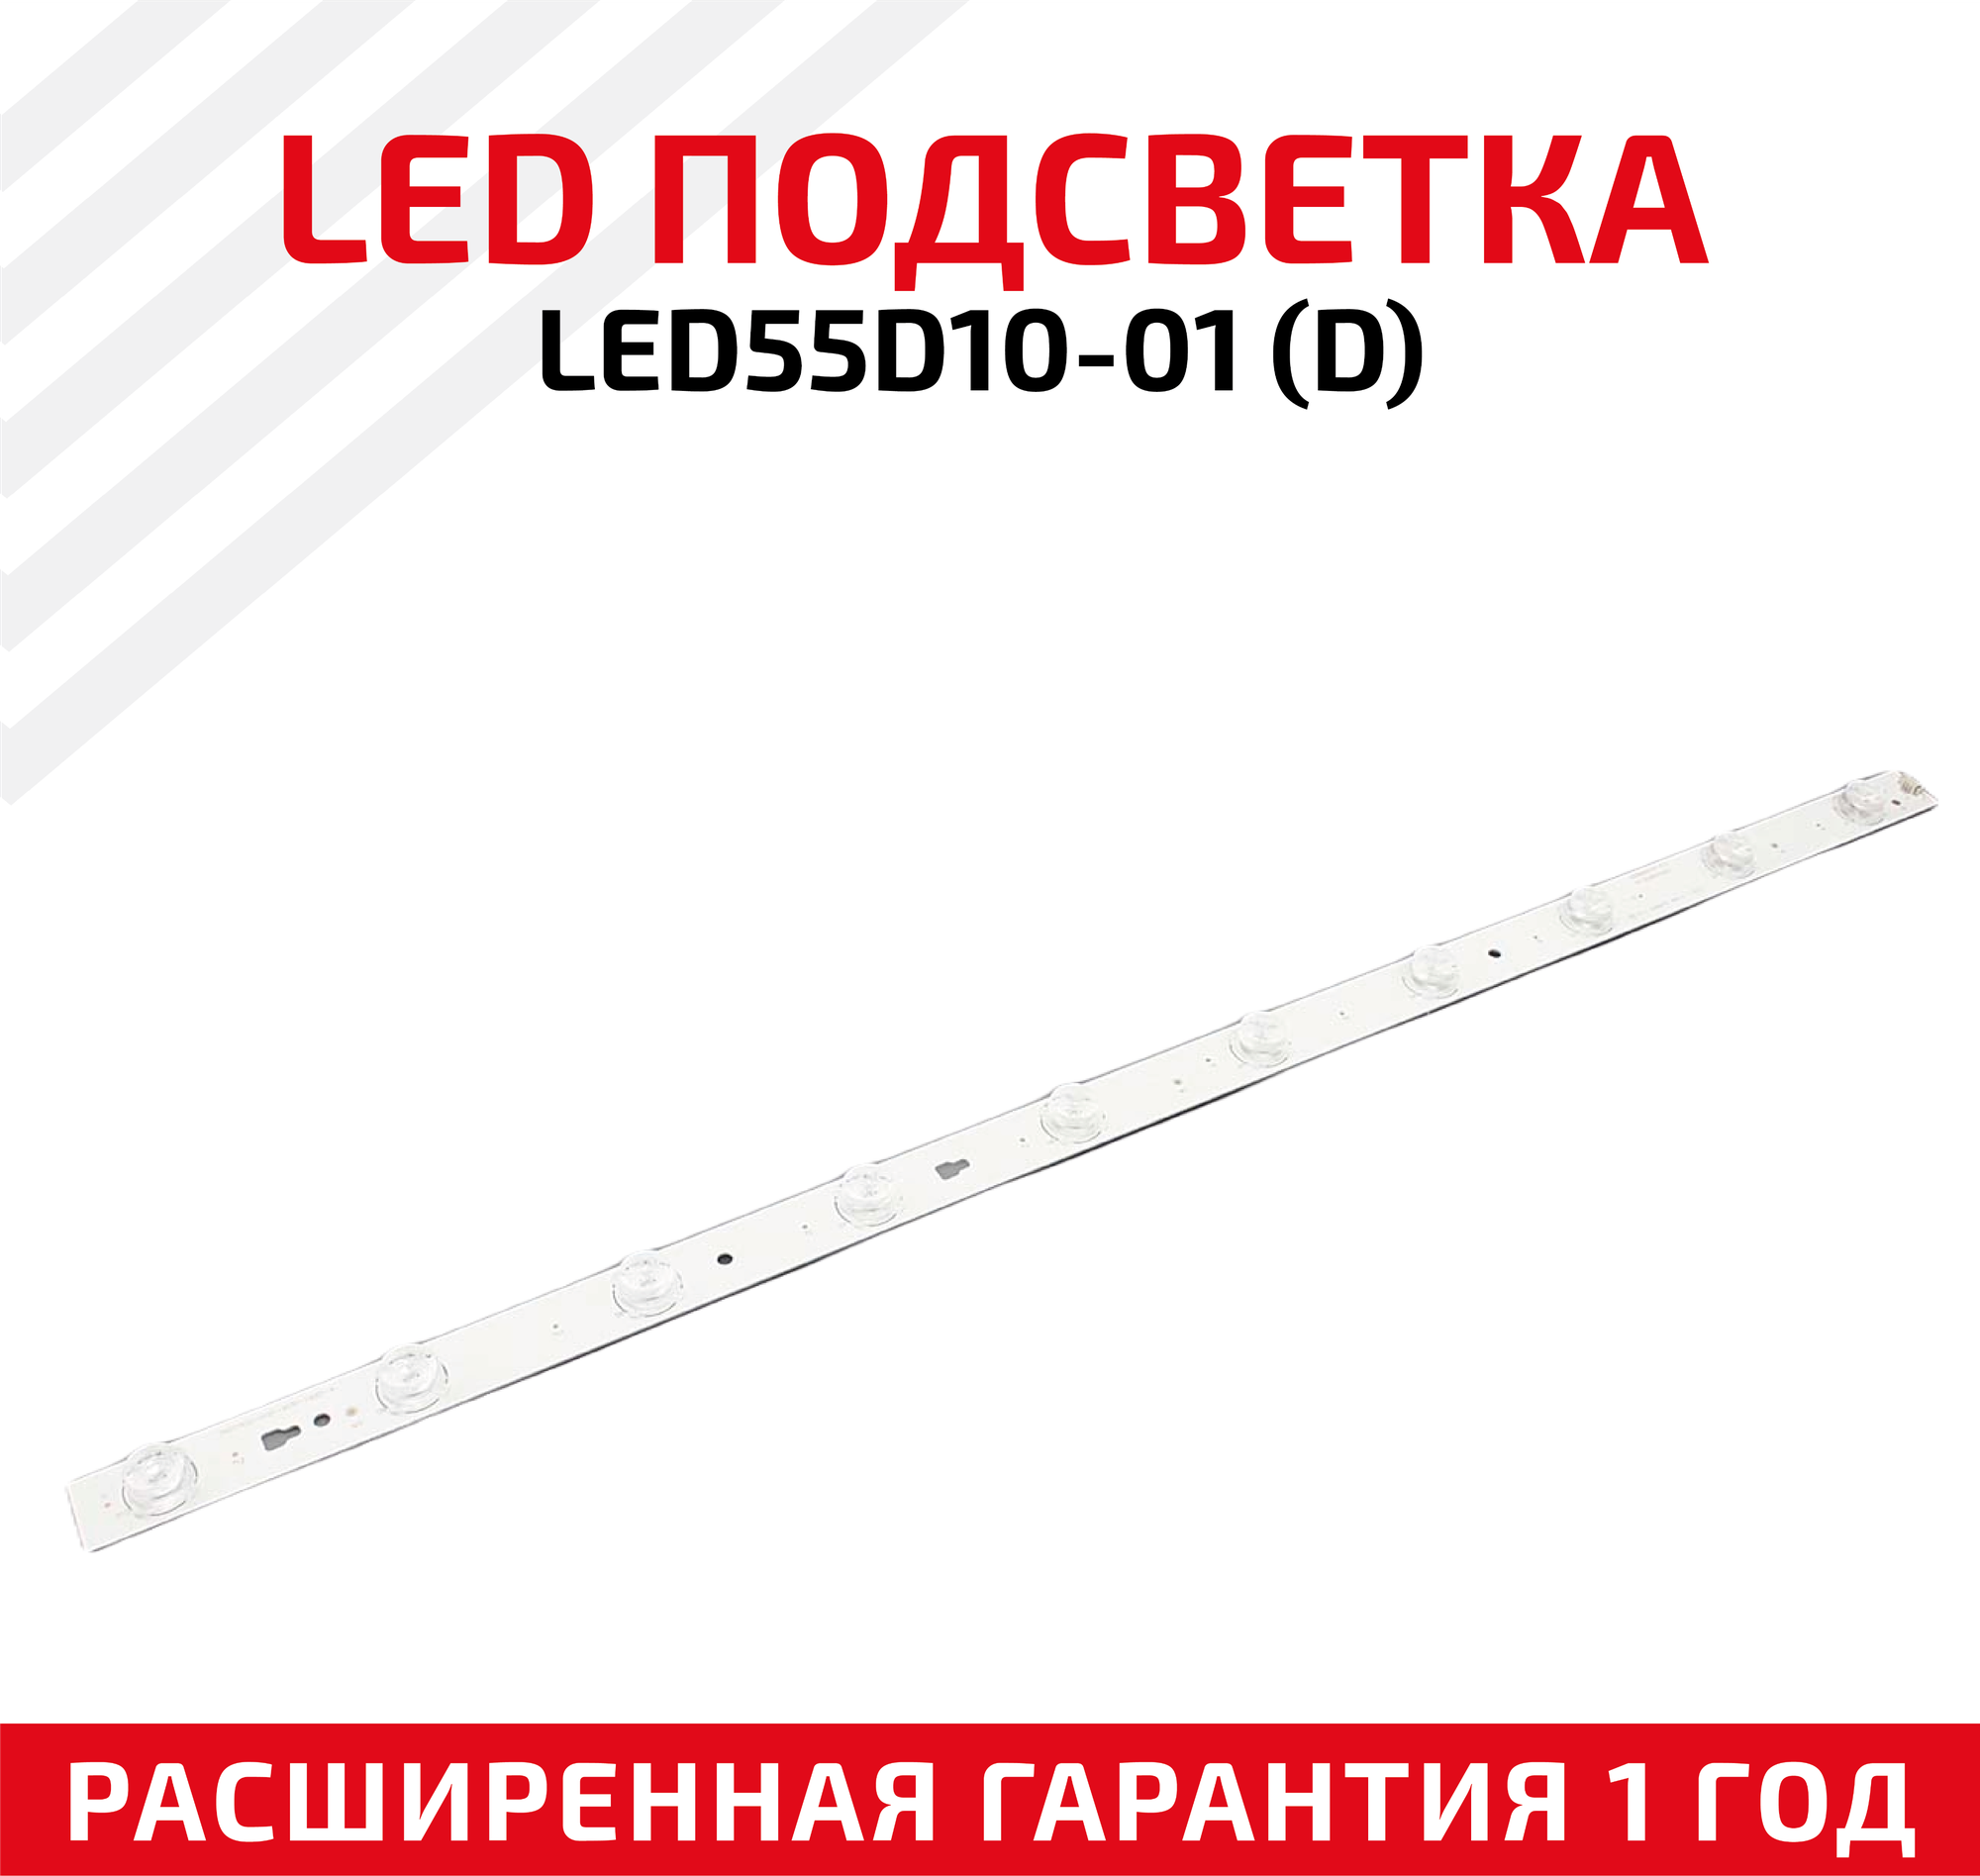 LED подсветка (светодиодная планка) для телевизора LED 55D10-01